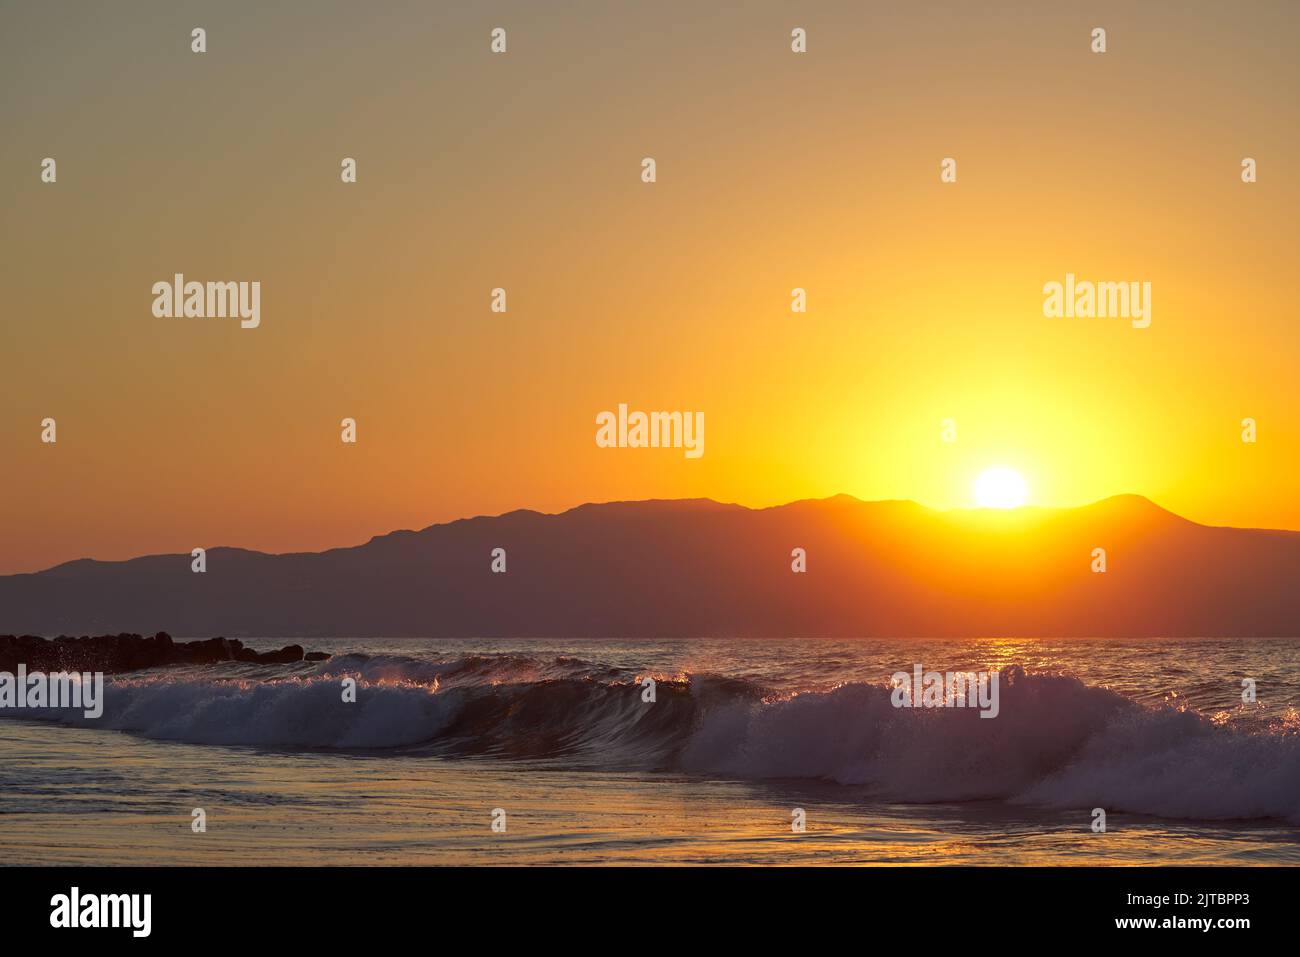 Wunderschönes Meer und Wellen bei Sonnenuntergang in Chania Kreta - Griechenland Stockfoto